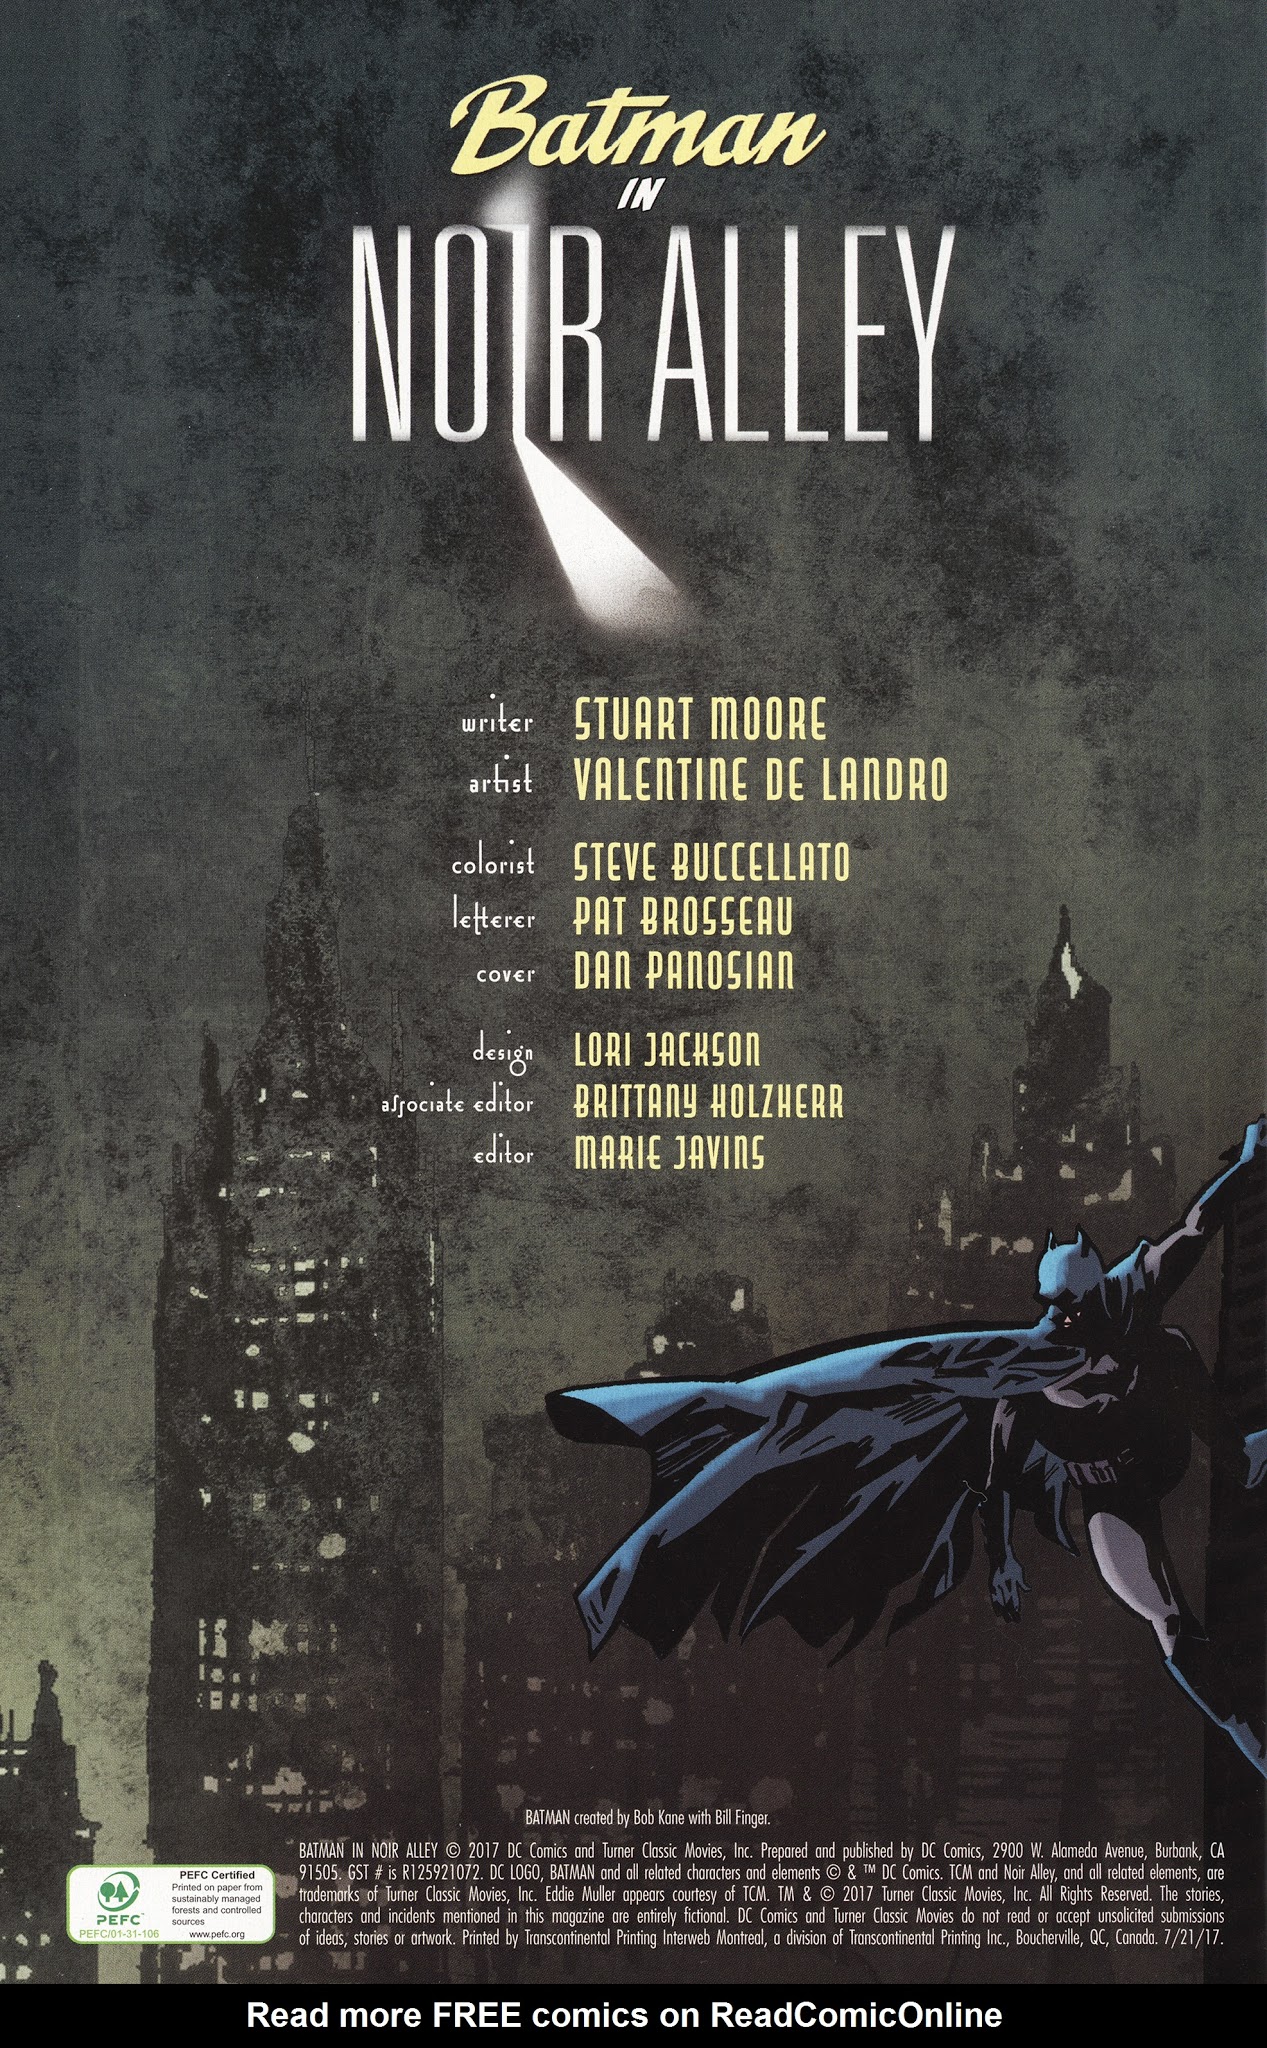 Batman In Noir Alley Full | Read Batman In Noir Alley Full comic online in  high quality. Read Full Comic online for free - Read comics online in high  quality .| READ COMIC ONLINE